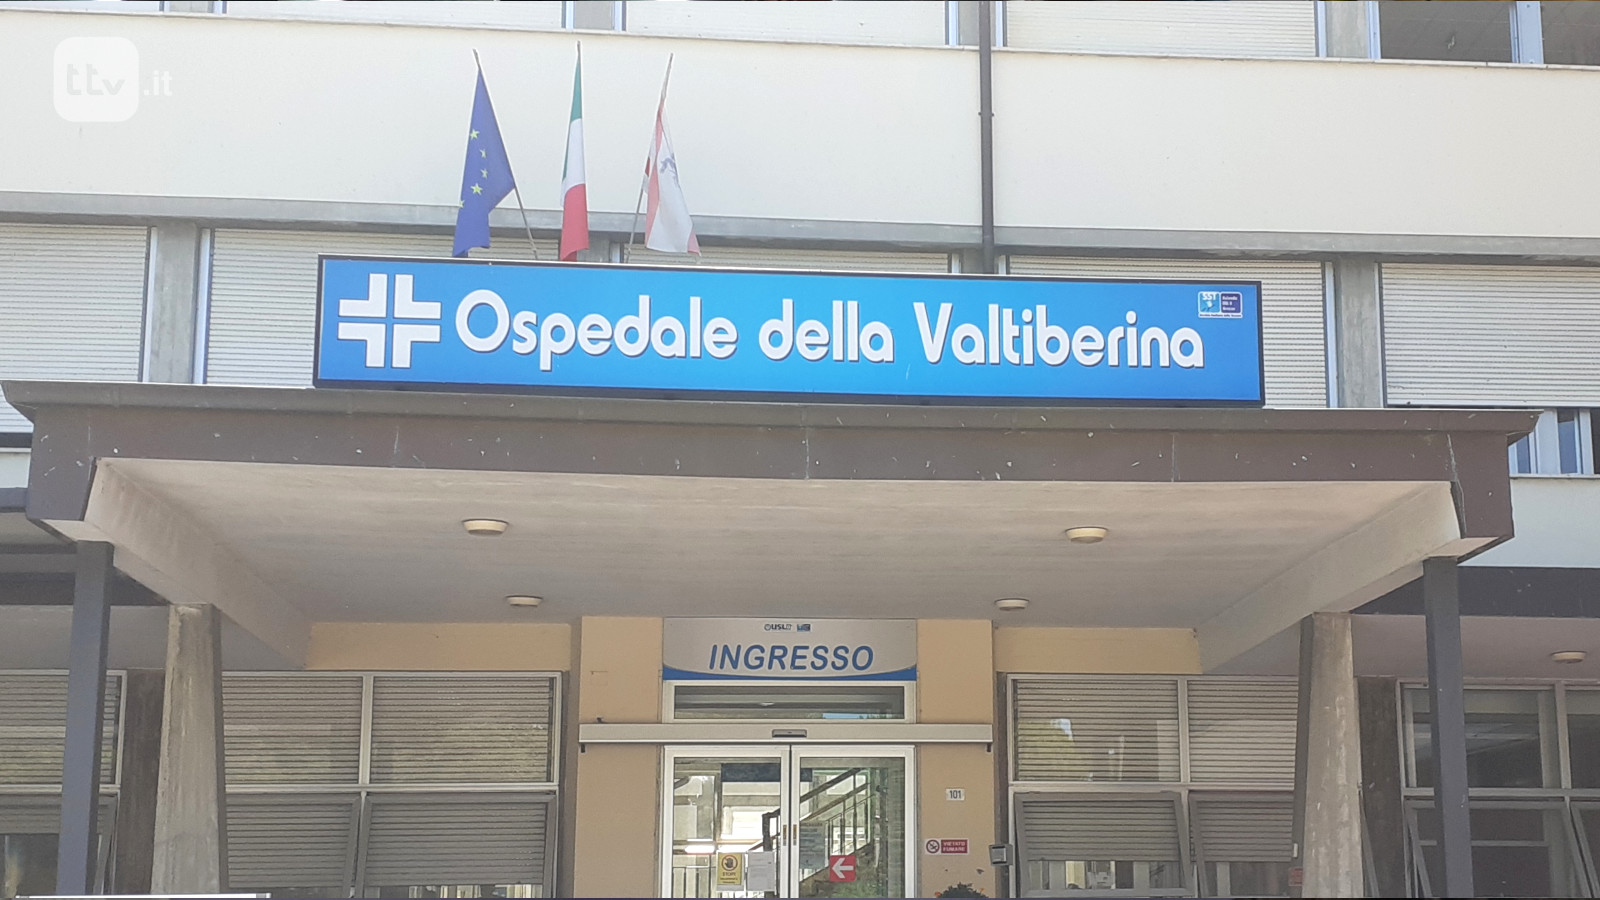 Ospedale della Valtiberina